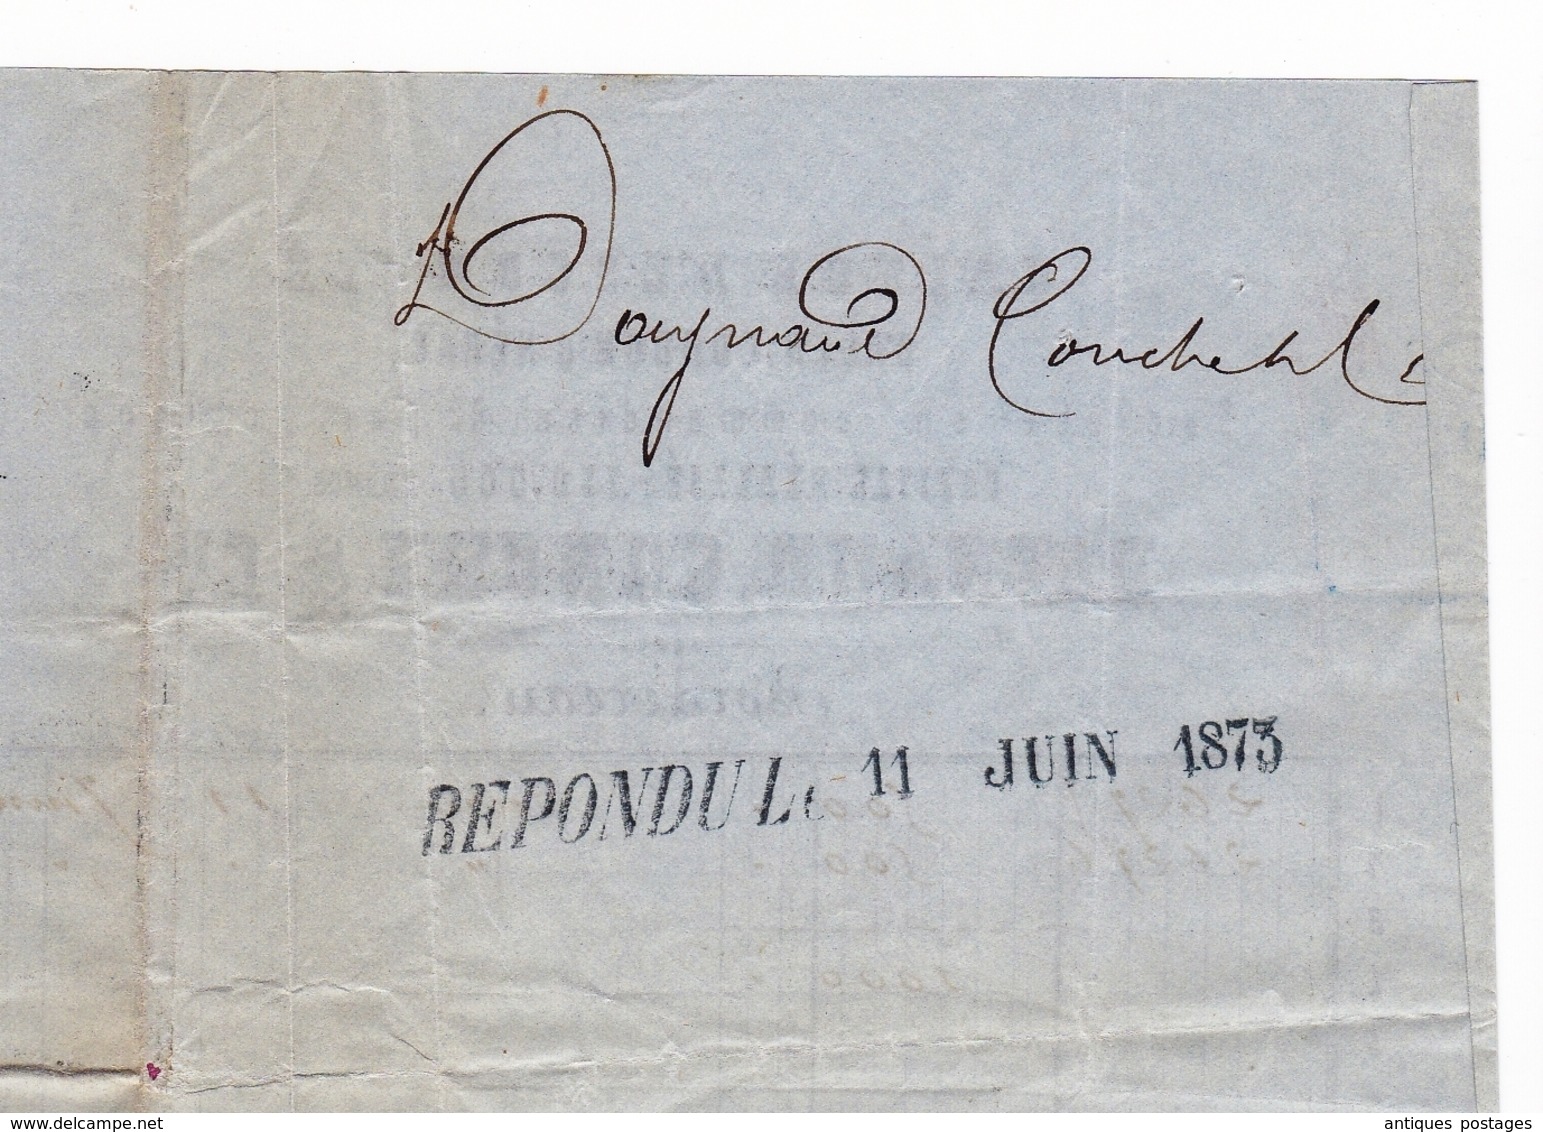 Lettre 1873 Gers Condom Daynaud Conche & Cie Caisse d'Escompte Banque Bank Cachet Ambulant Périgueux à Paris